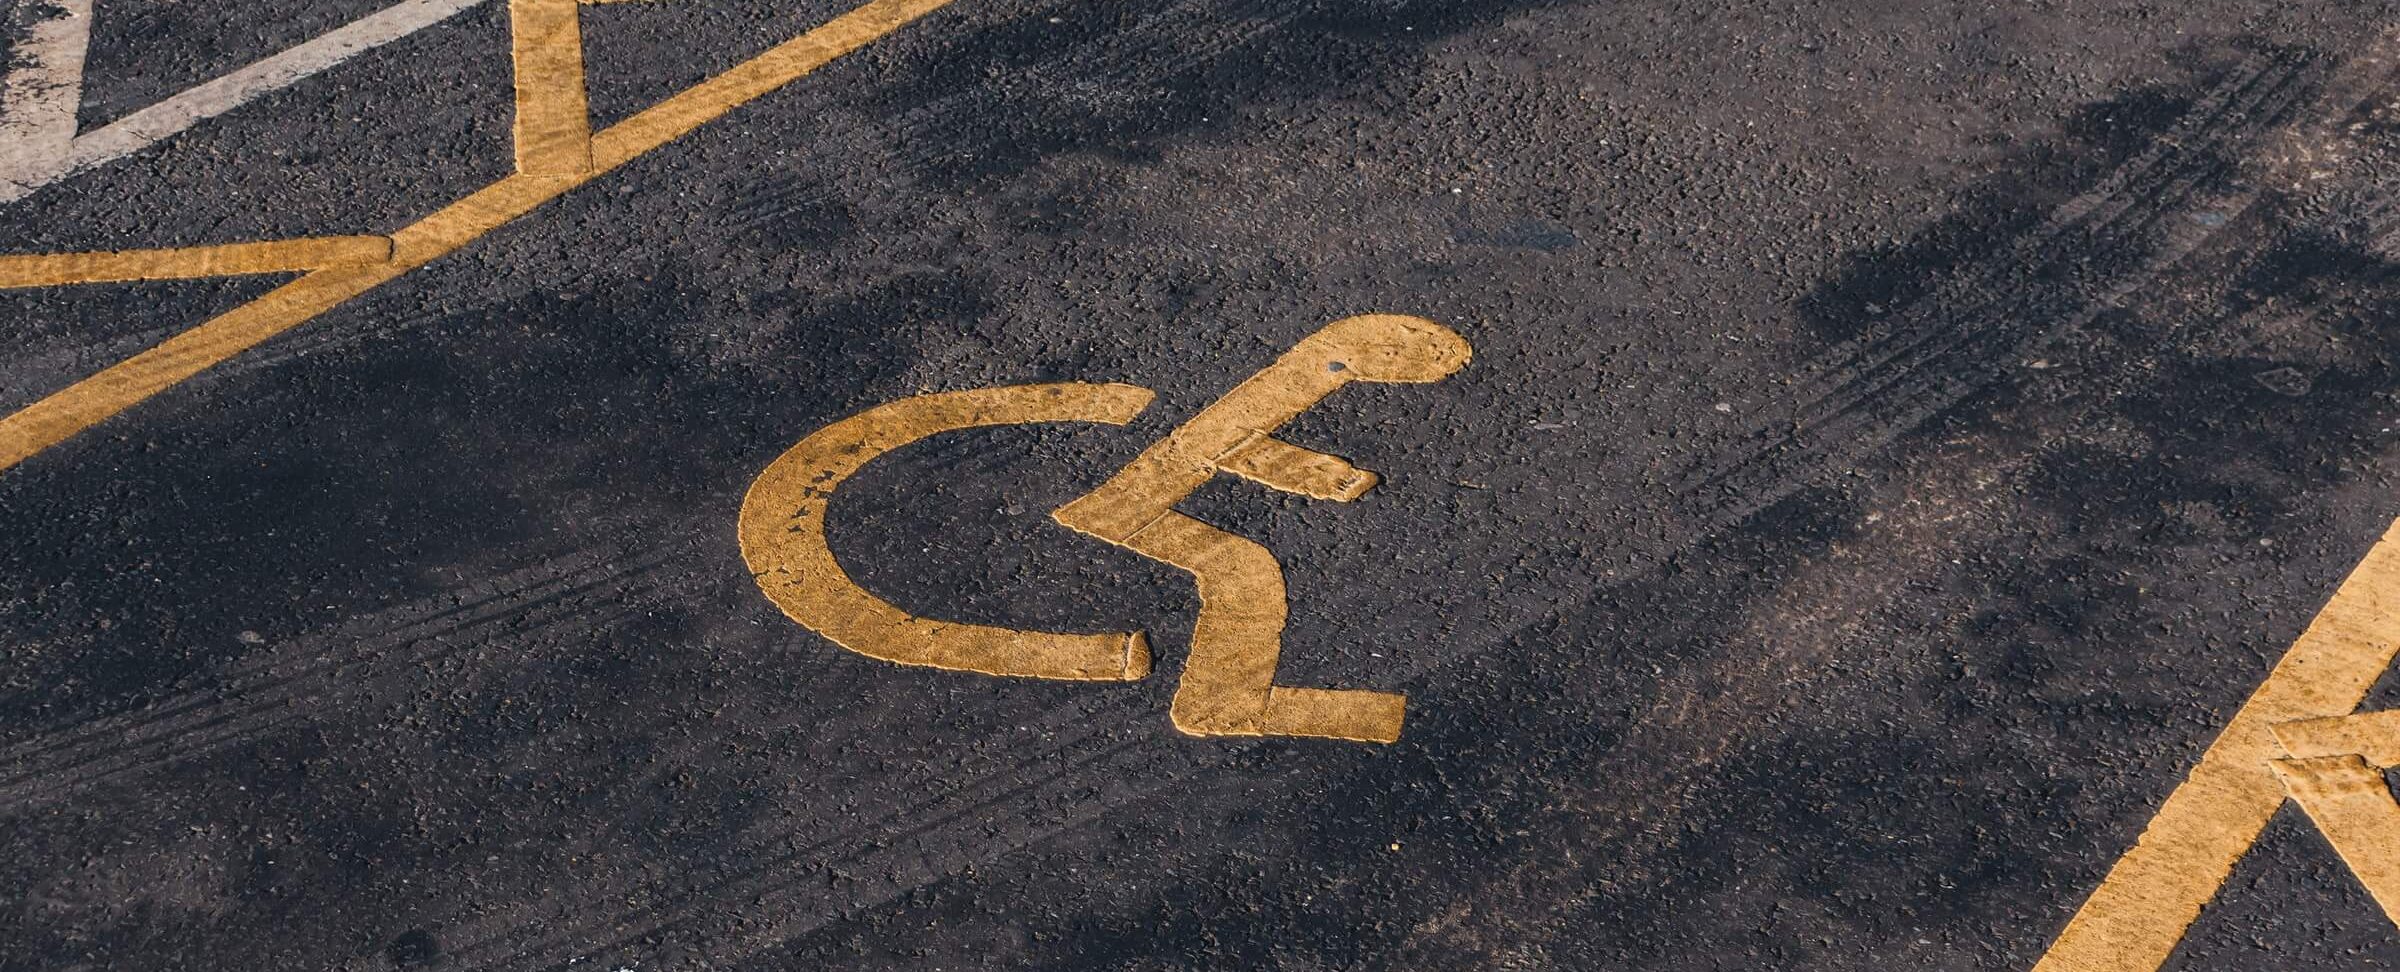 Carte de stationnement handicapé - Comment l'obtenir ?